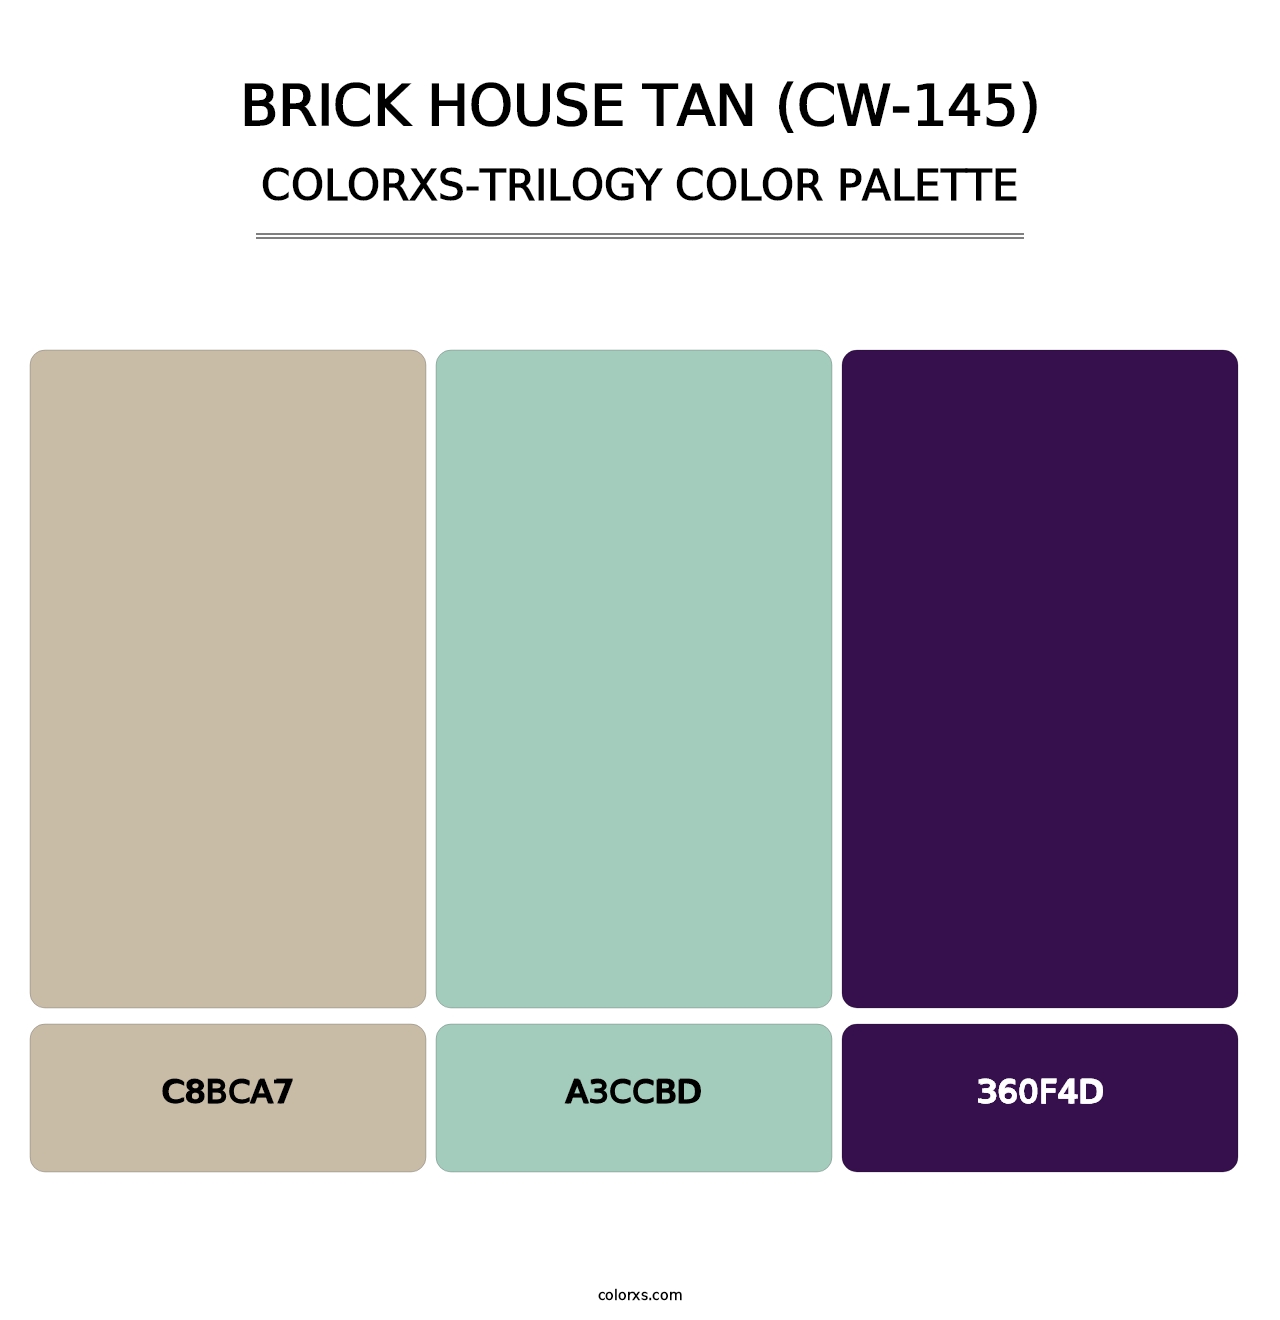 Brick House Tan (CW-145) - Colorxs Trilogy Palette